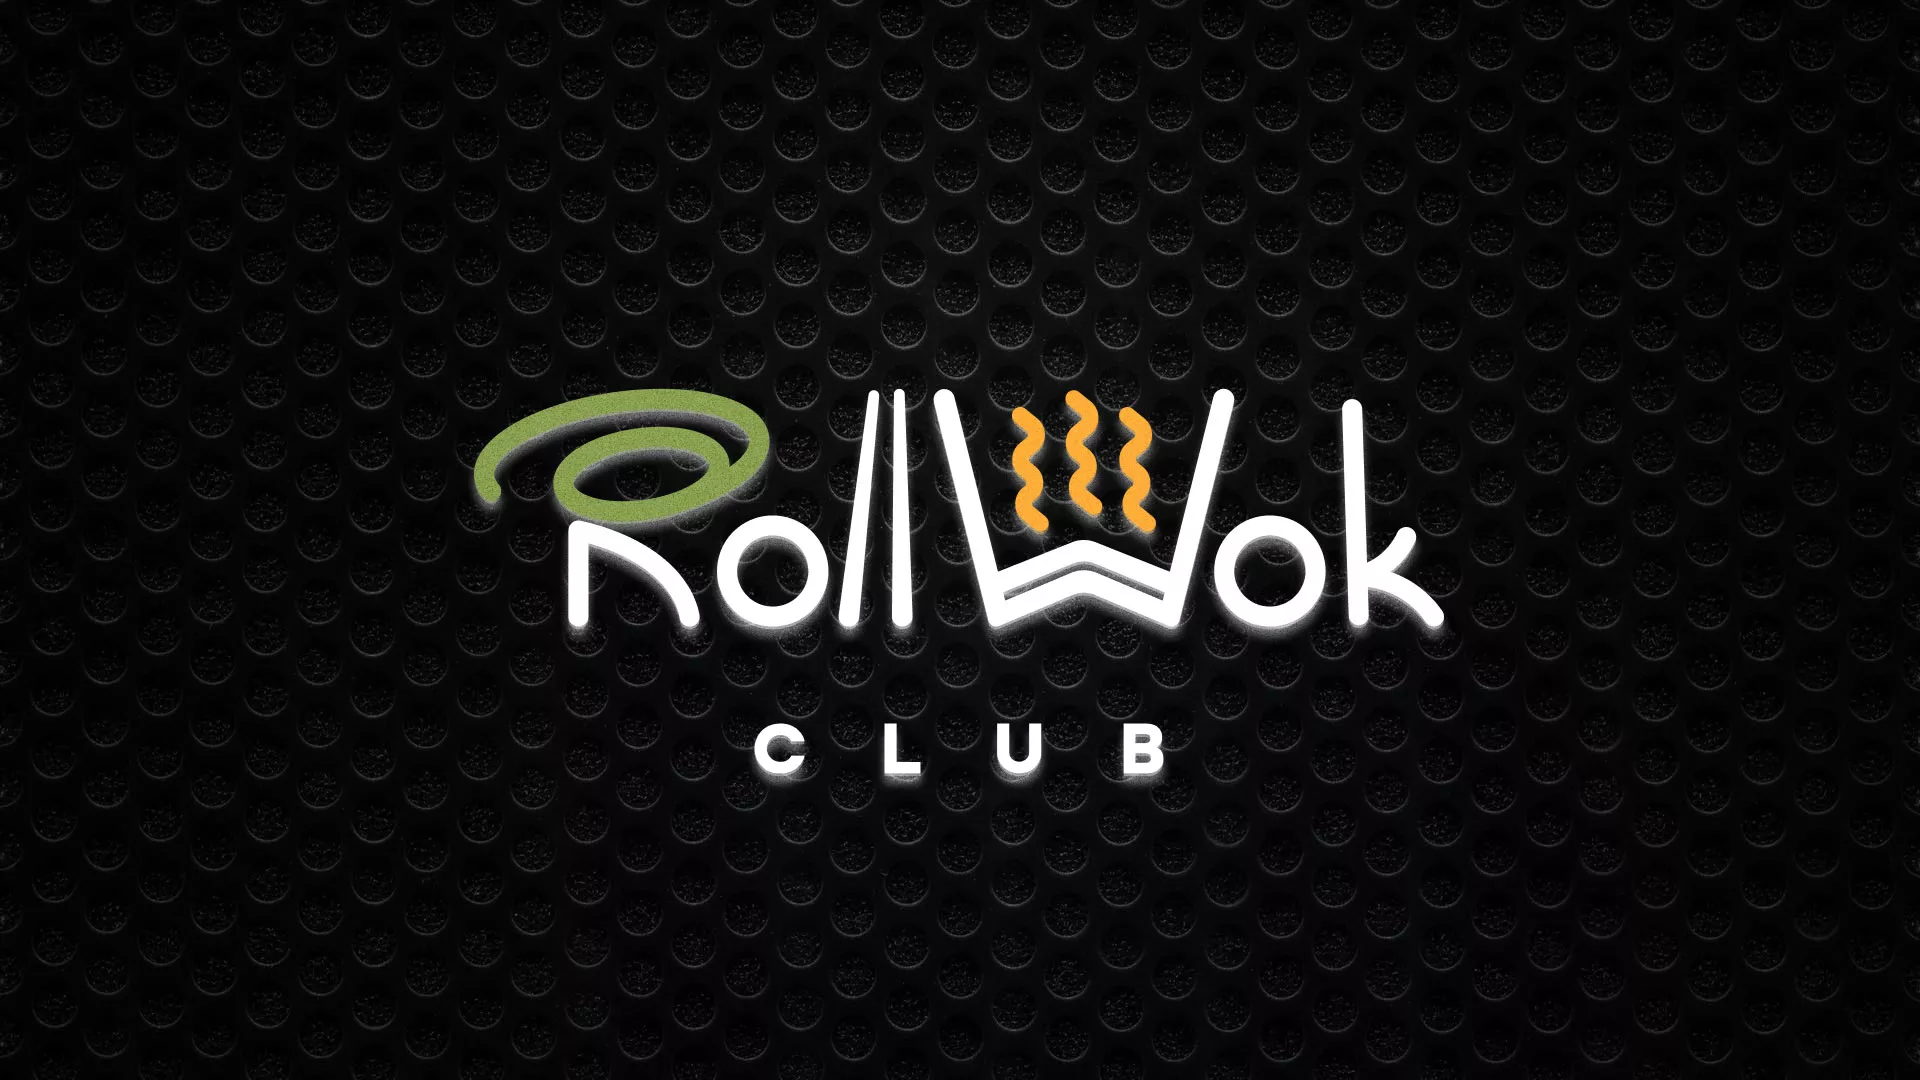 Брендирование торговых точек суши-бара «Roll Wok Club» в Анадыре